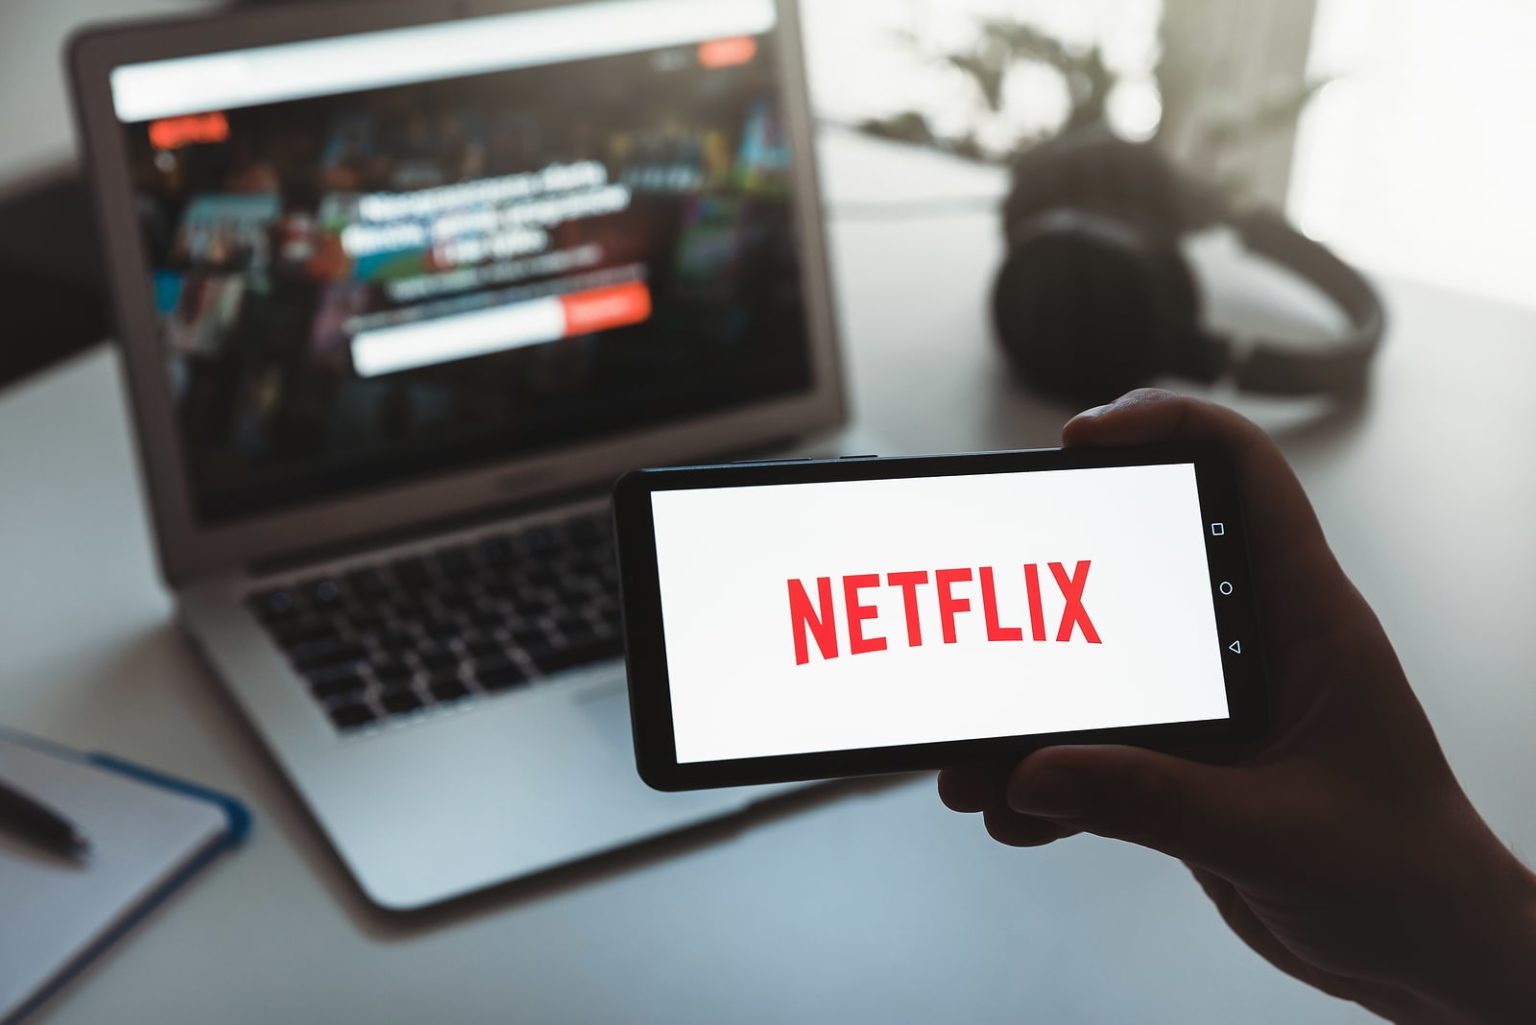 Russie : de nouvelles réglementations sur les médias obligent Netflix à diffuser de la propagande à partir de mars